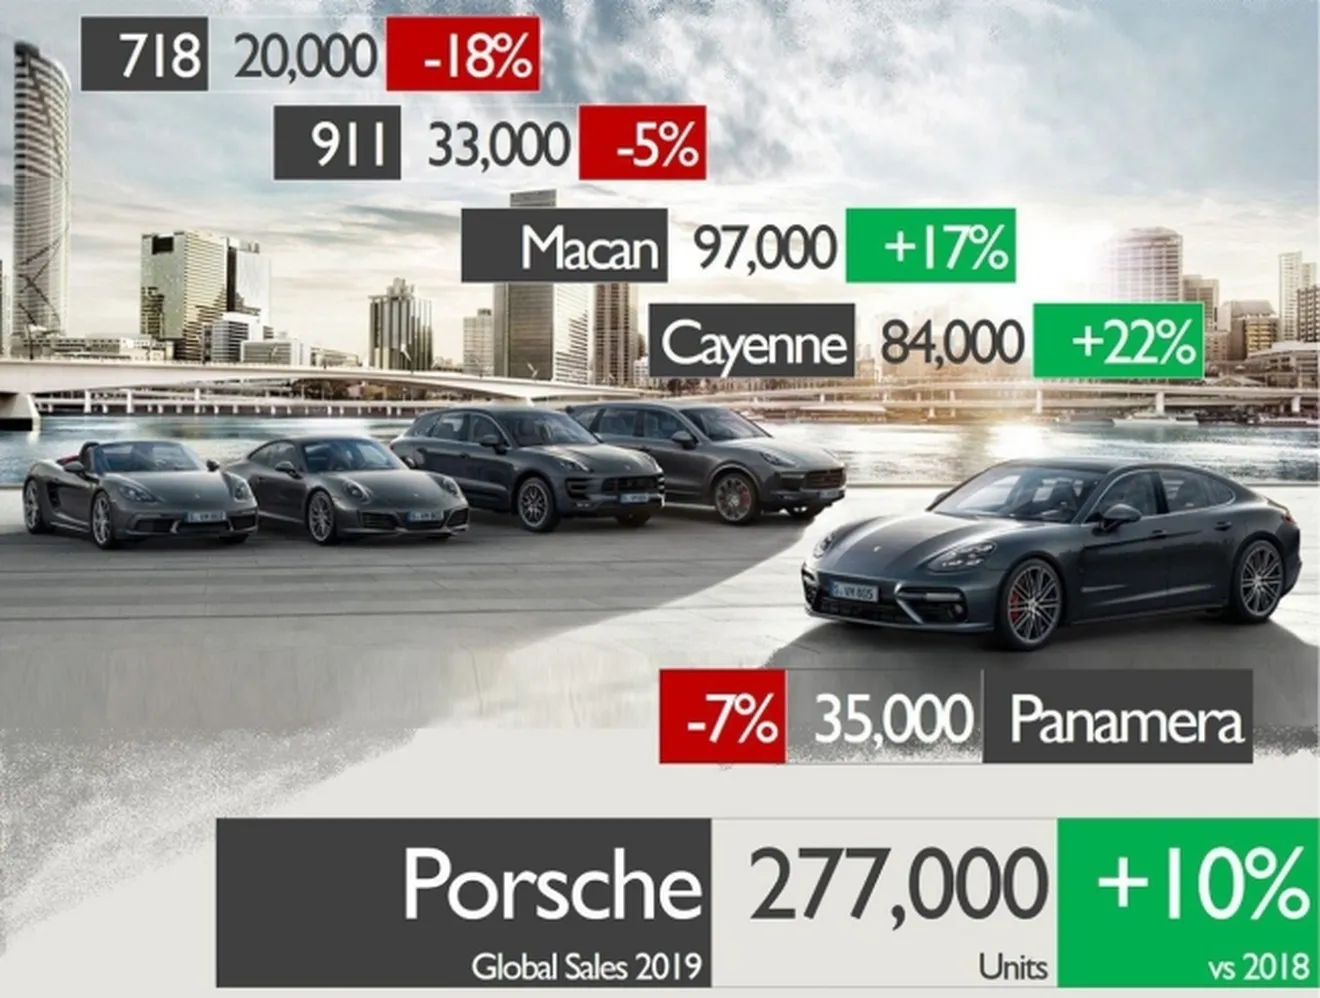 Ventas de Porsche en 2019